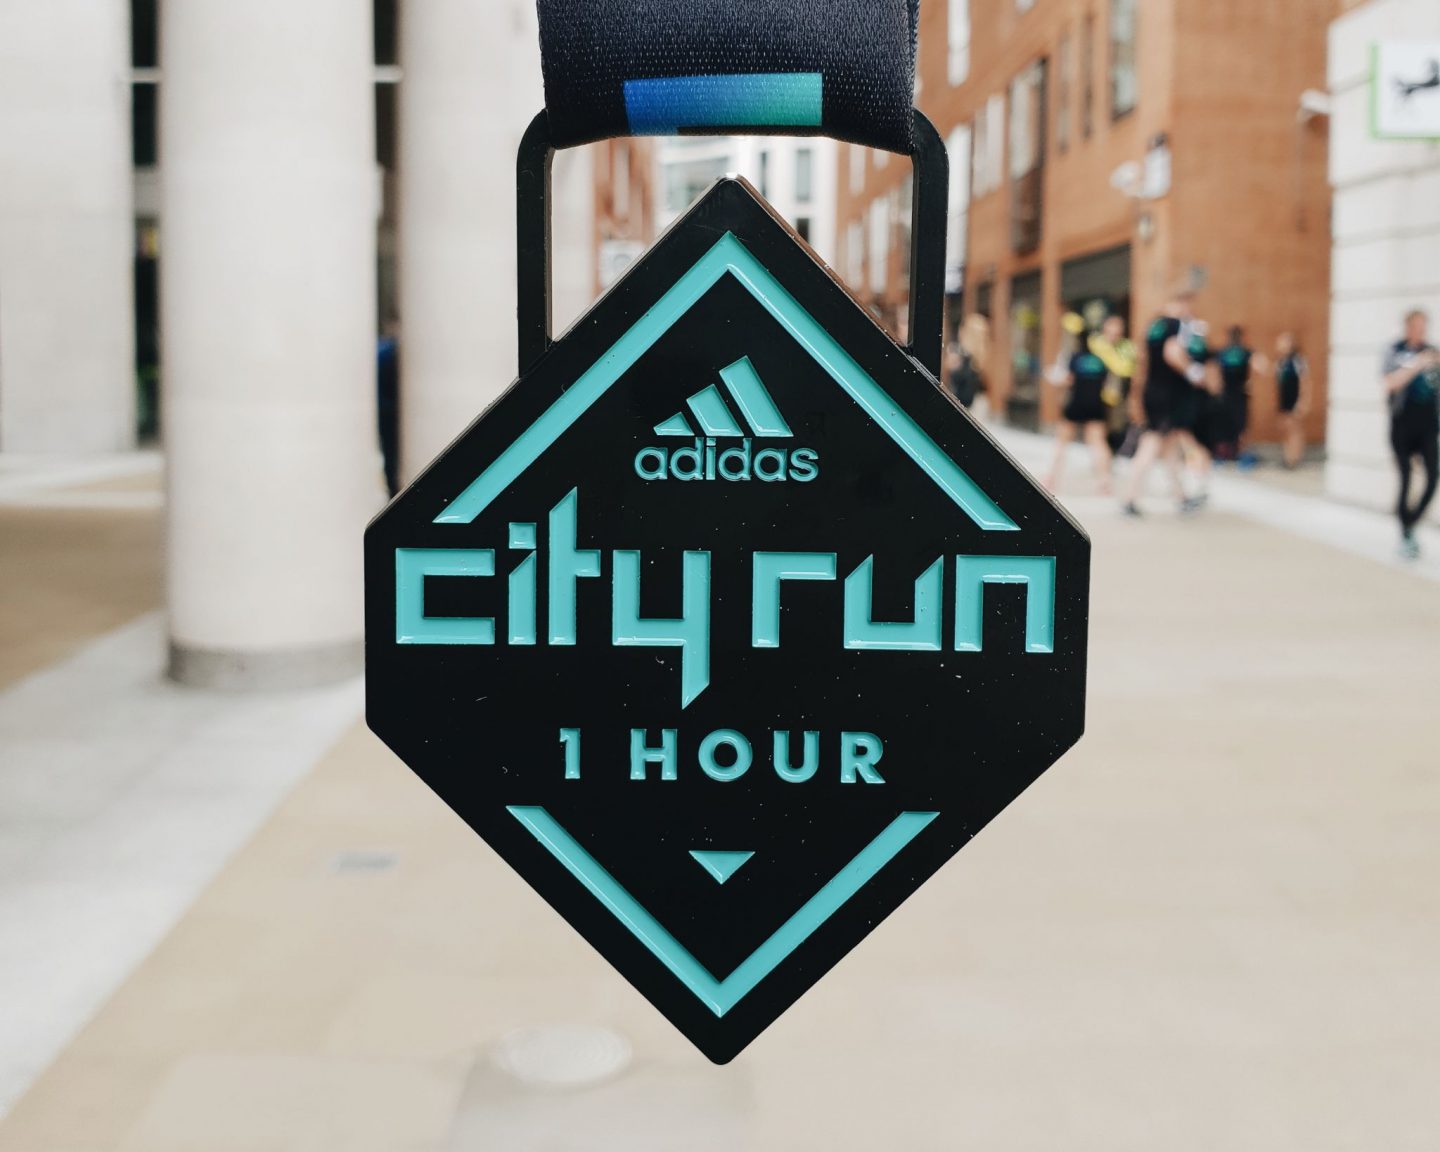 Adidas City Run One Hour 17.6.18 - keep 